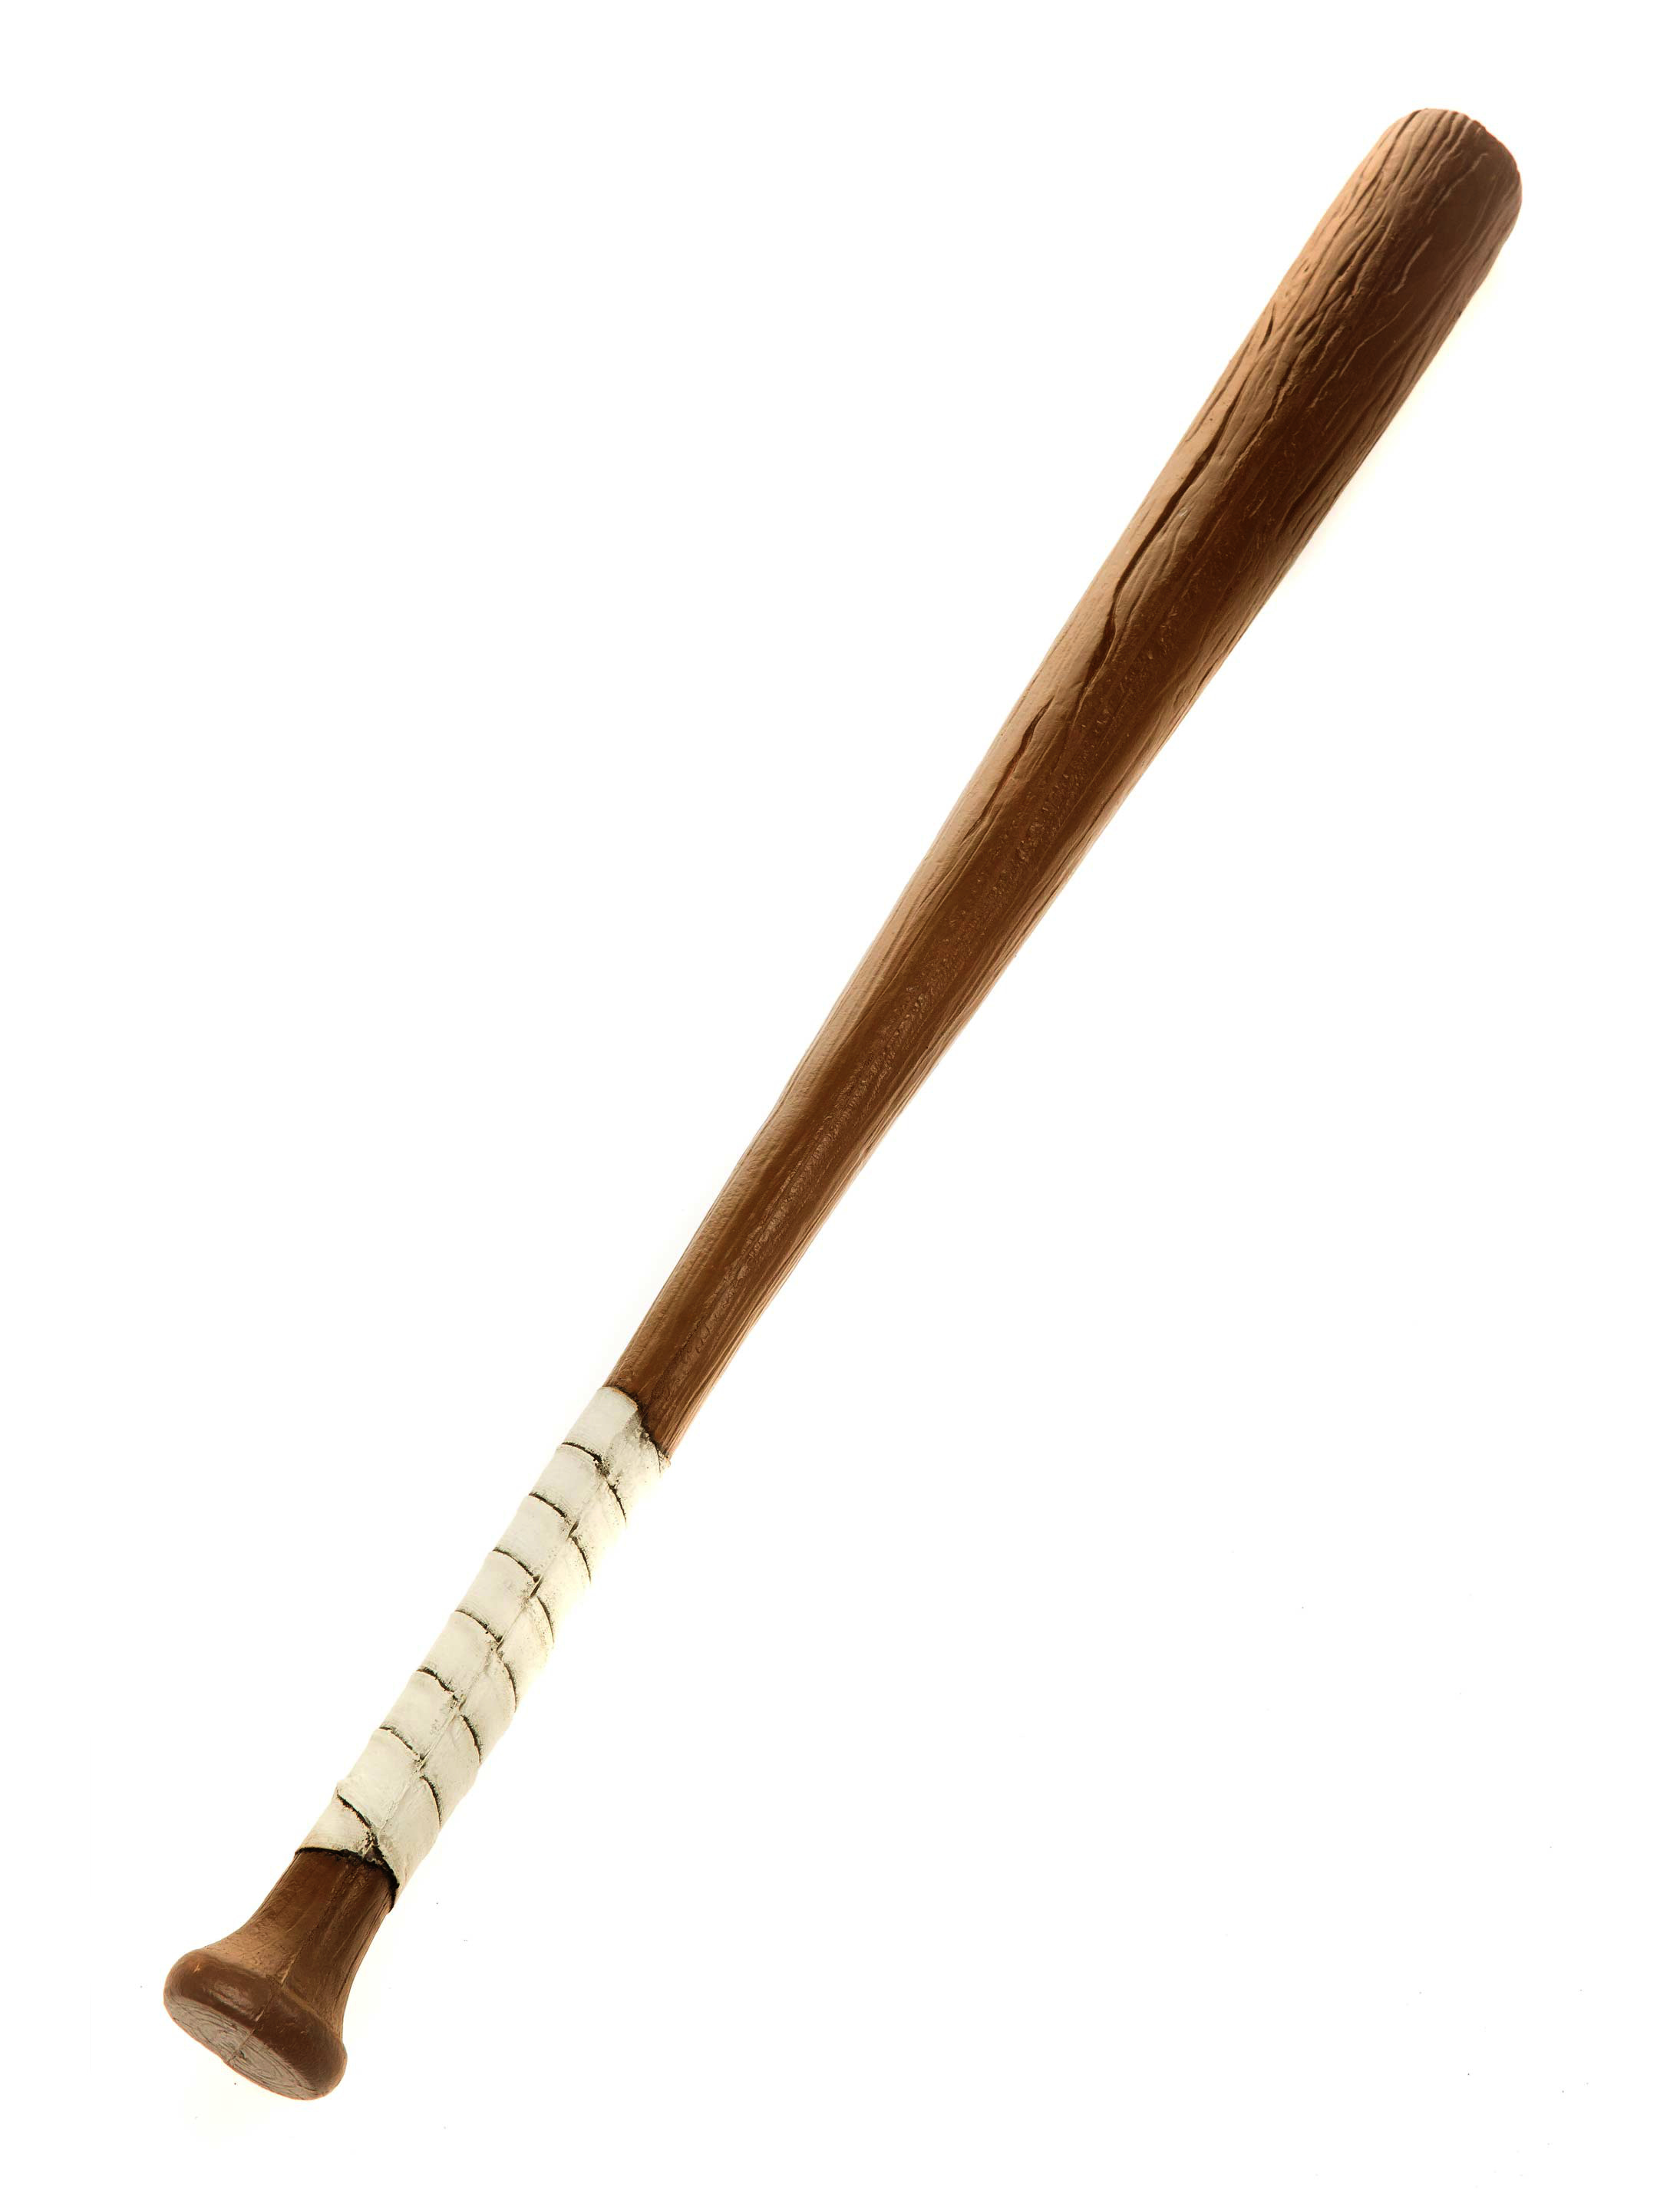 Baseballschläger weißer Griff 84,5cm